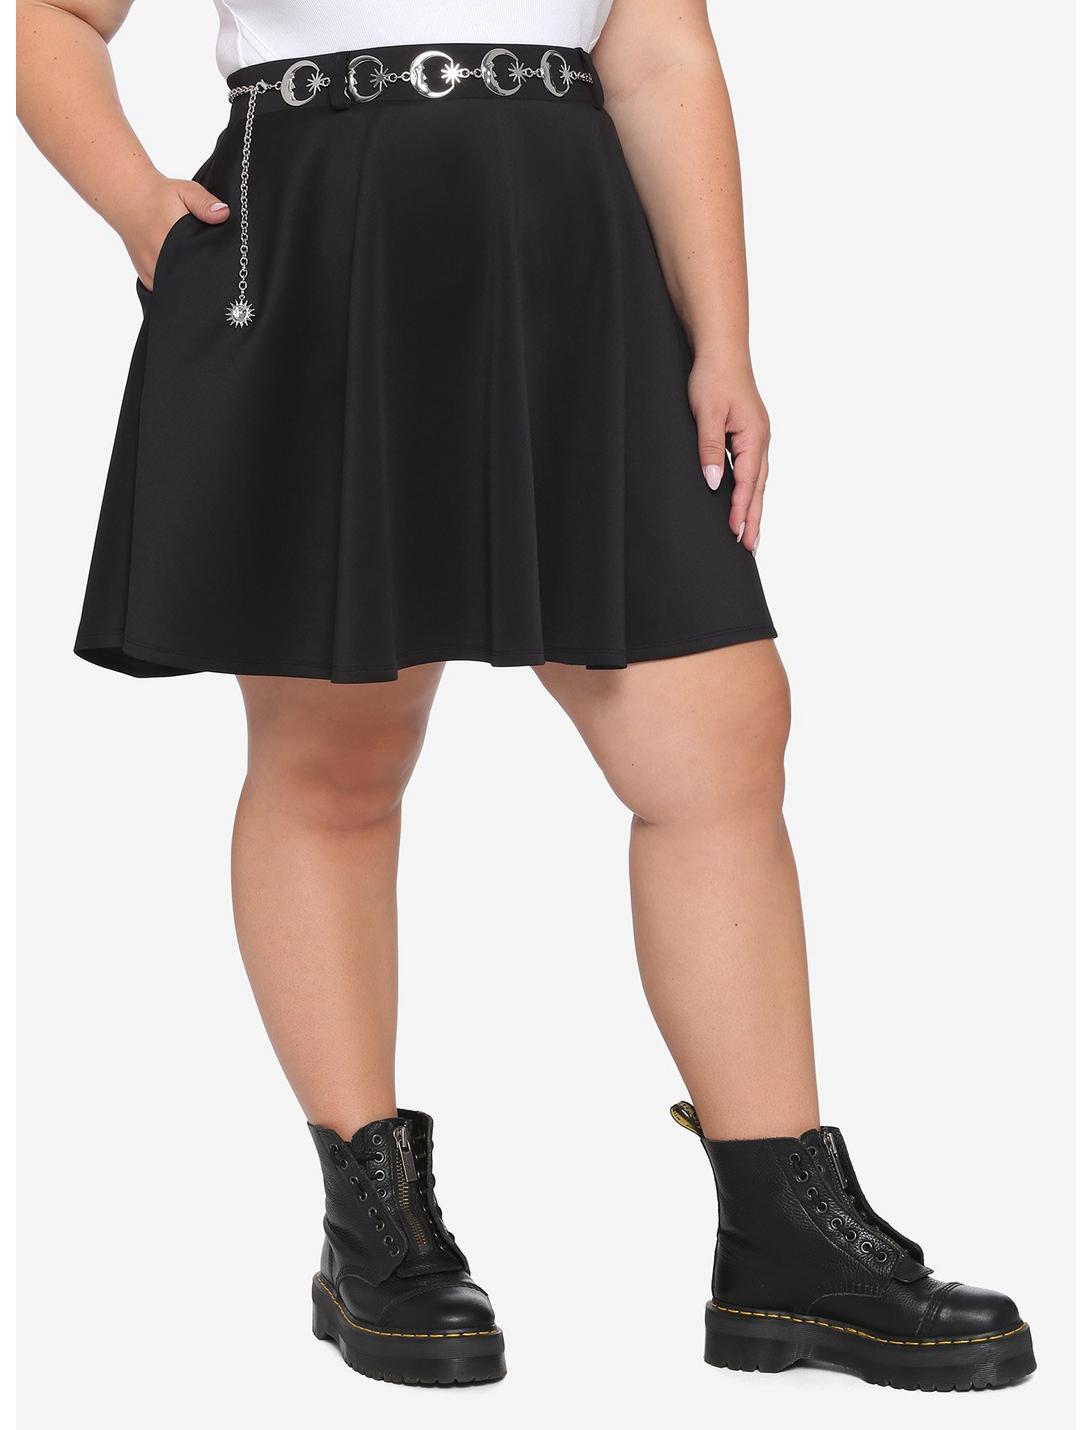 Moon & Stars Belt Black Skater Skirt Plus Size, BLACK, hi-res